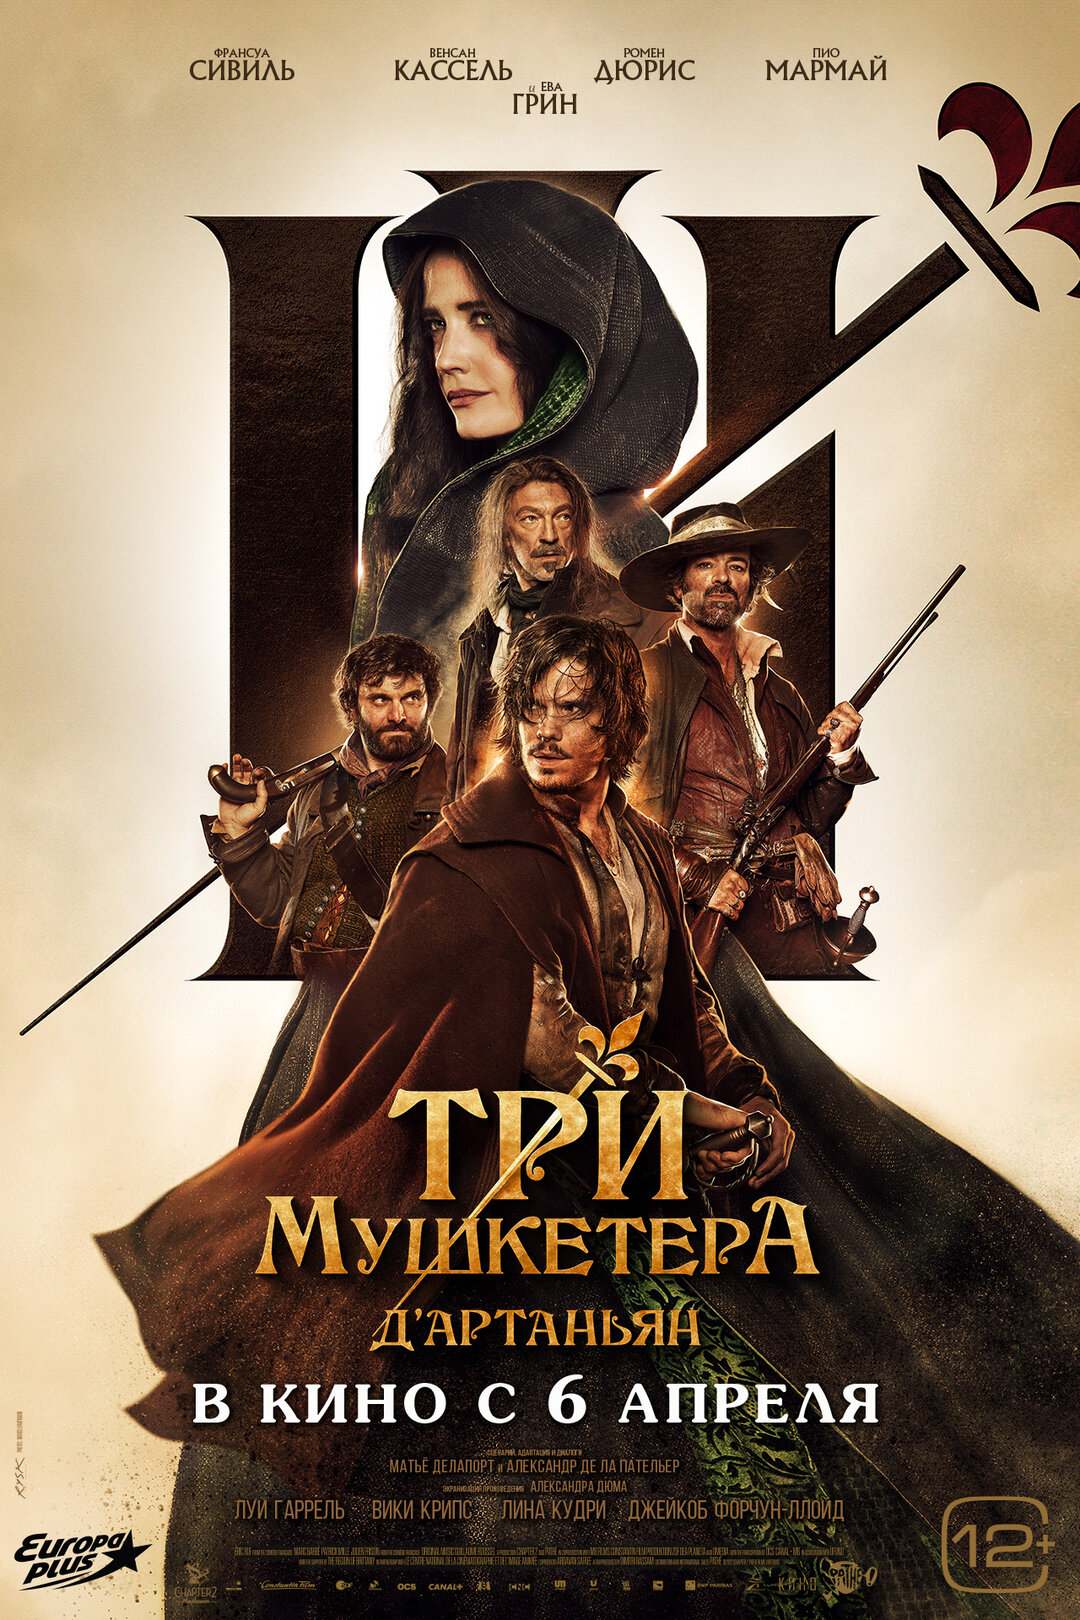 Обложка к картине "Три мушкетёра: Д’Артаньян"